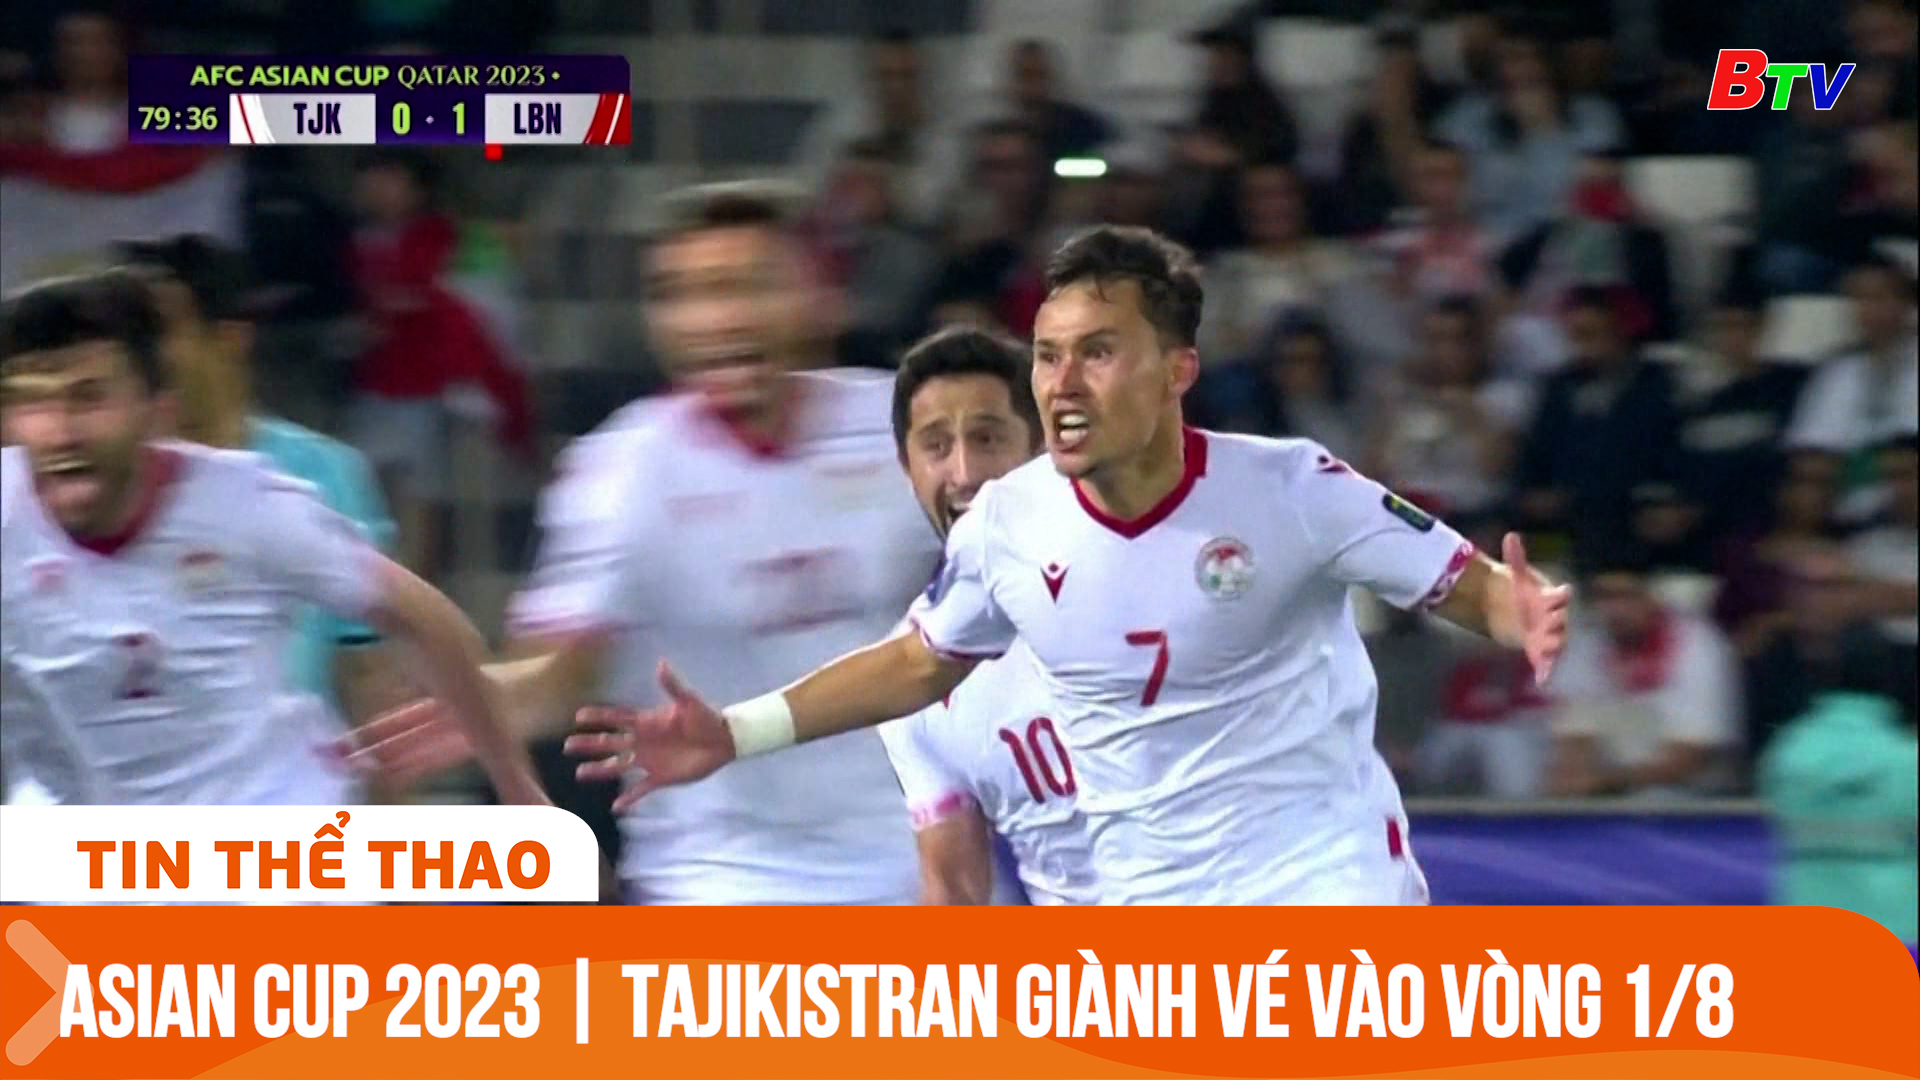 Asian Cup 2023 | Tajikistran giành vé thứ hai bảng A vào vòng 1/8 | Tin Thể thao 24h	